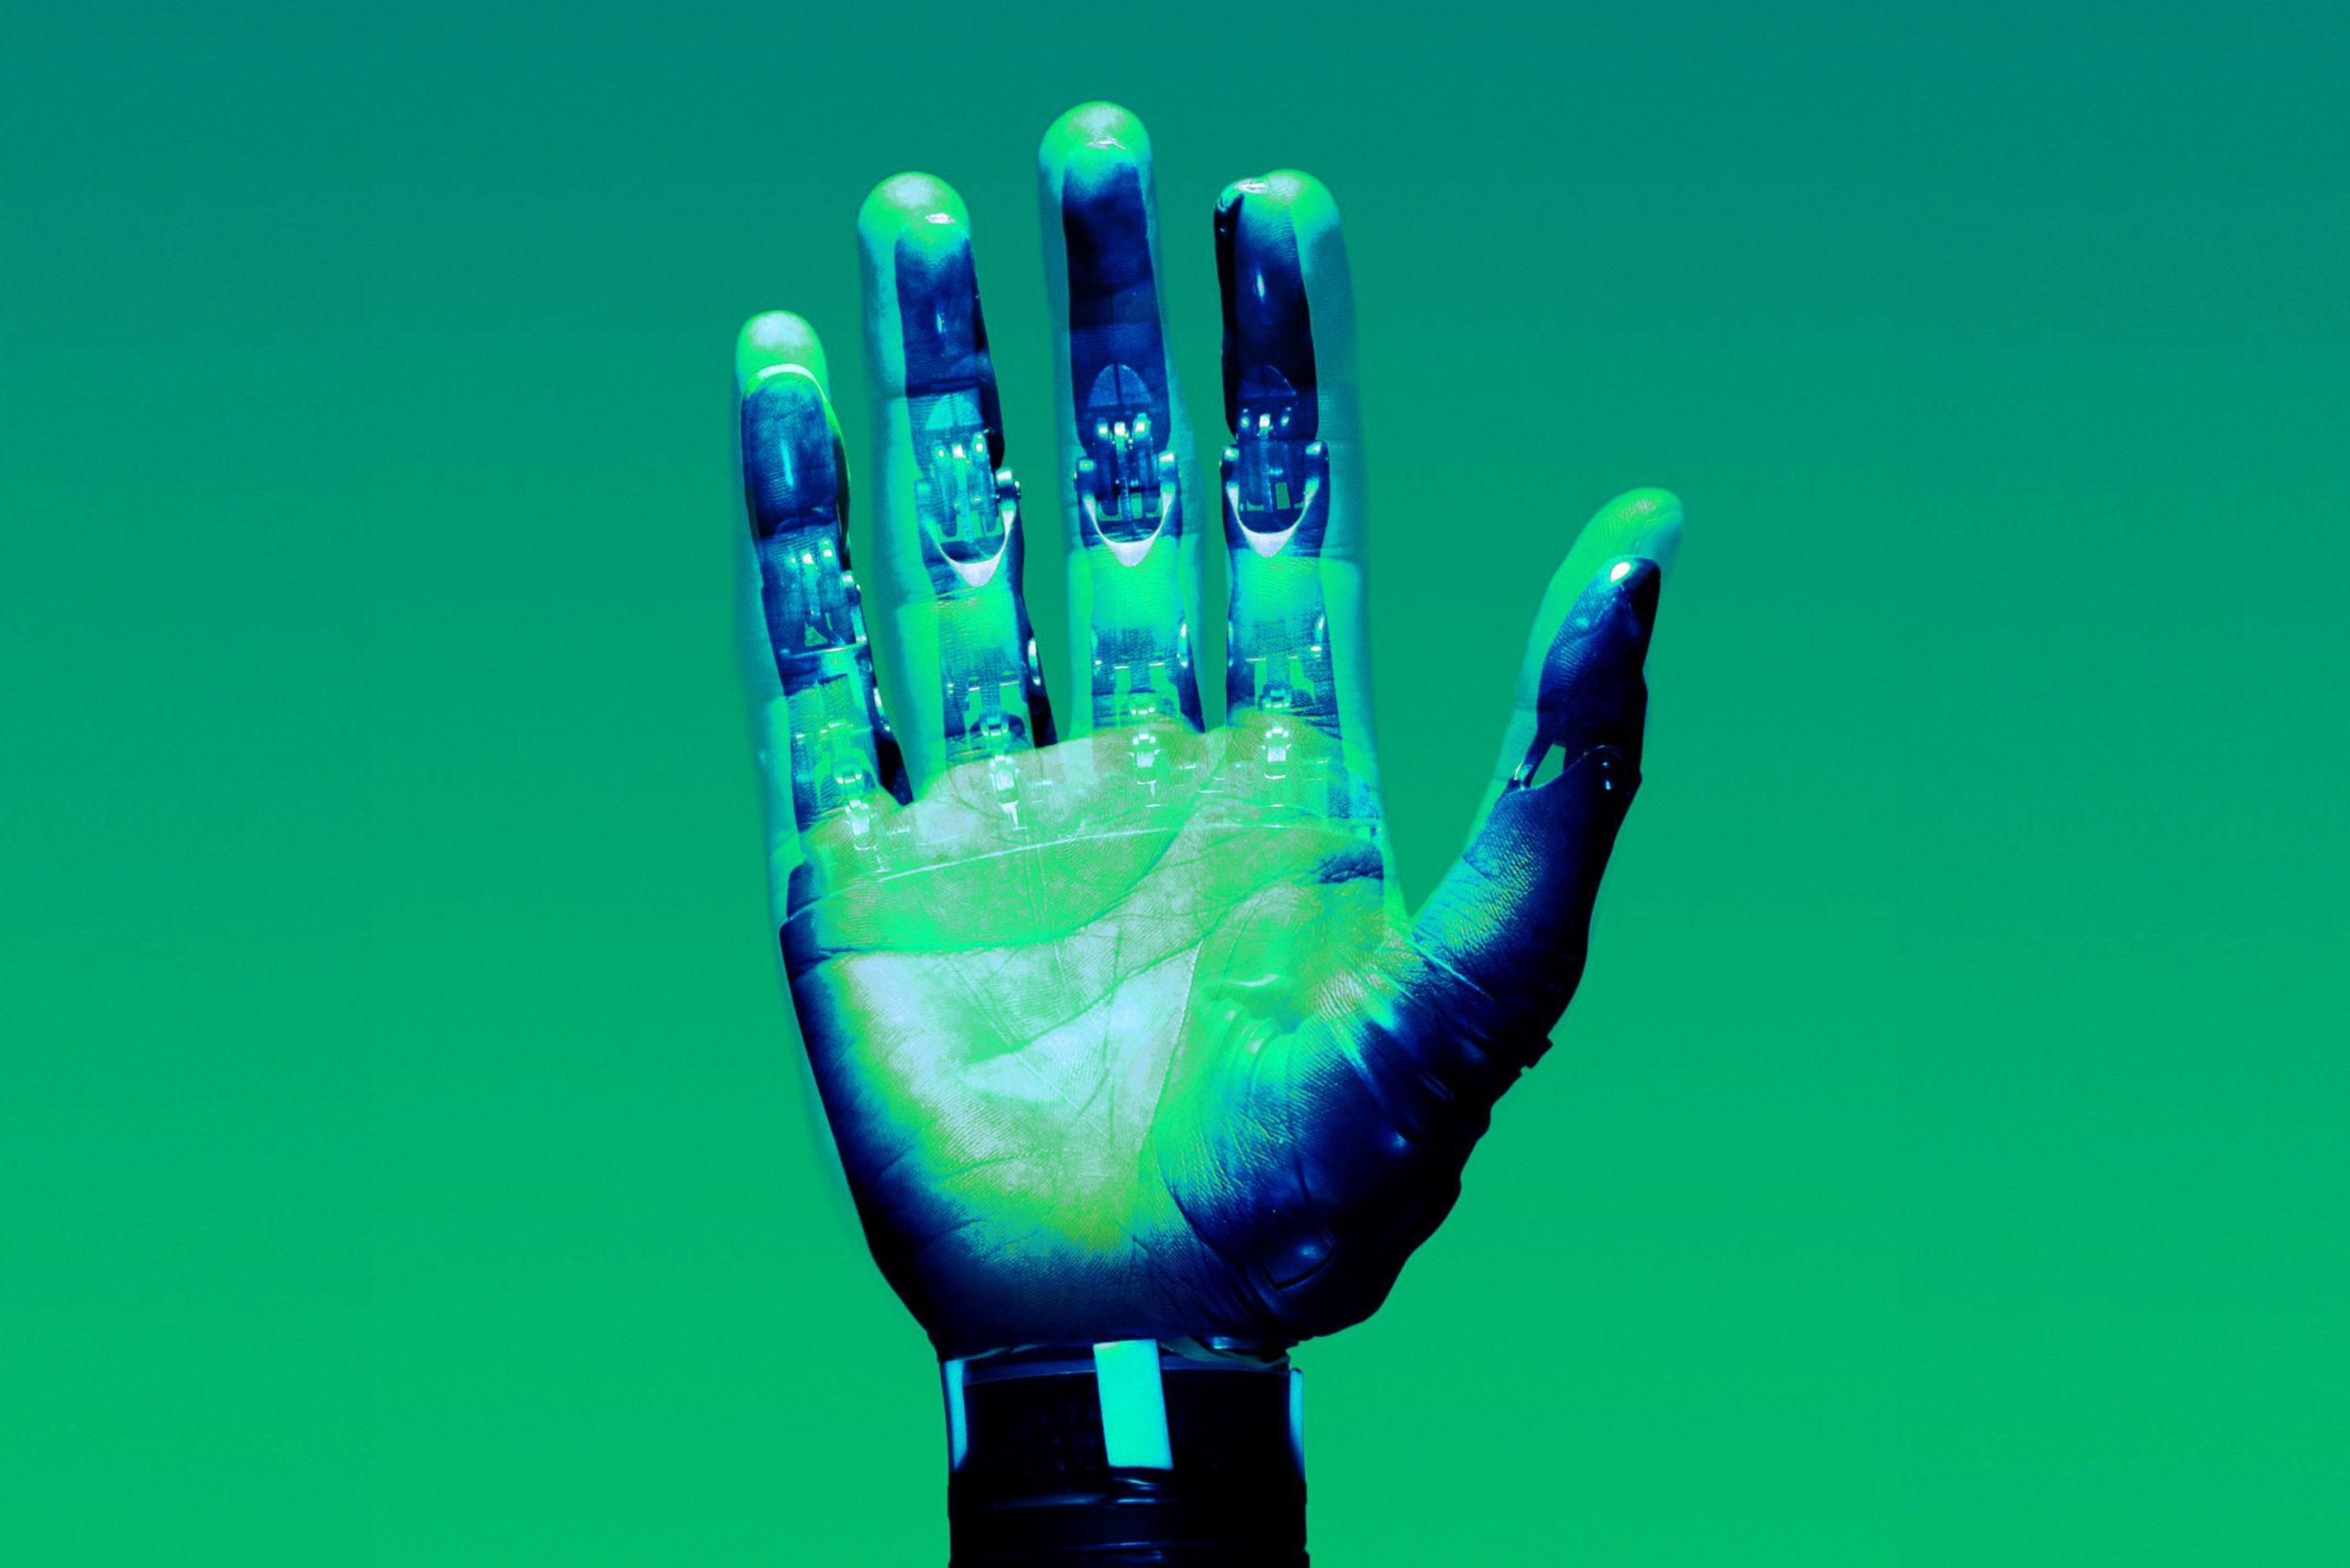 Mão humana e mão robótica sobrepostas em transparência como forma de ilustrar a diferença entre a riqueza do toque de uma mão (o valor intrínseco) e a frieza de um robot (o valor instrumental).